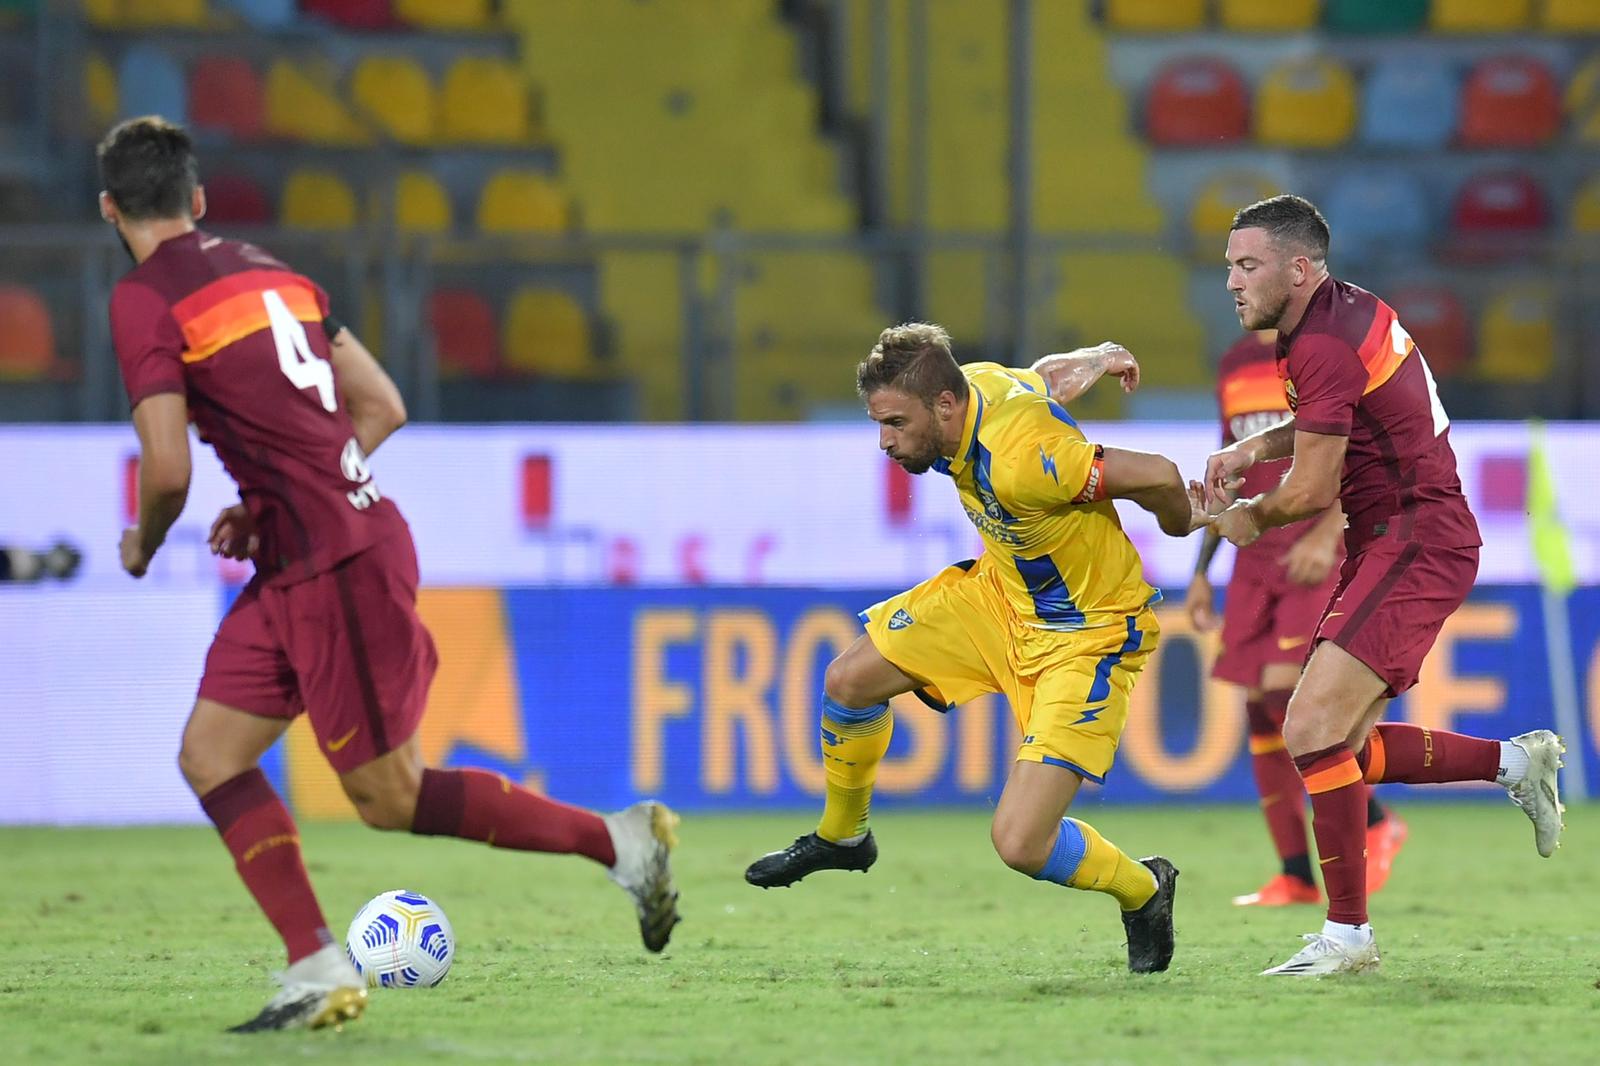 Frosinone-Roma 1-4, giallorossi nettamente più forti ed in forma